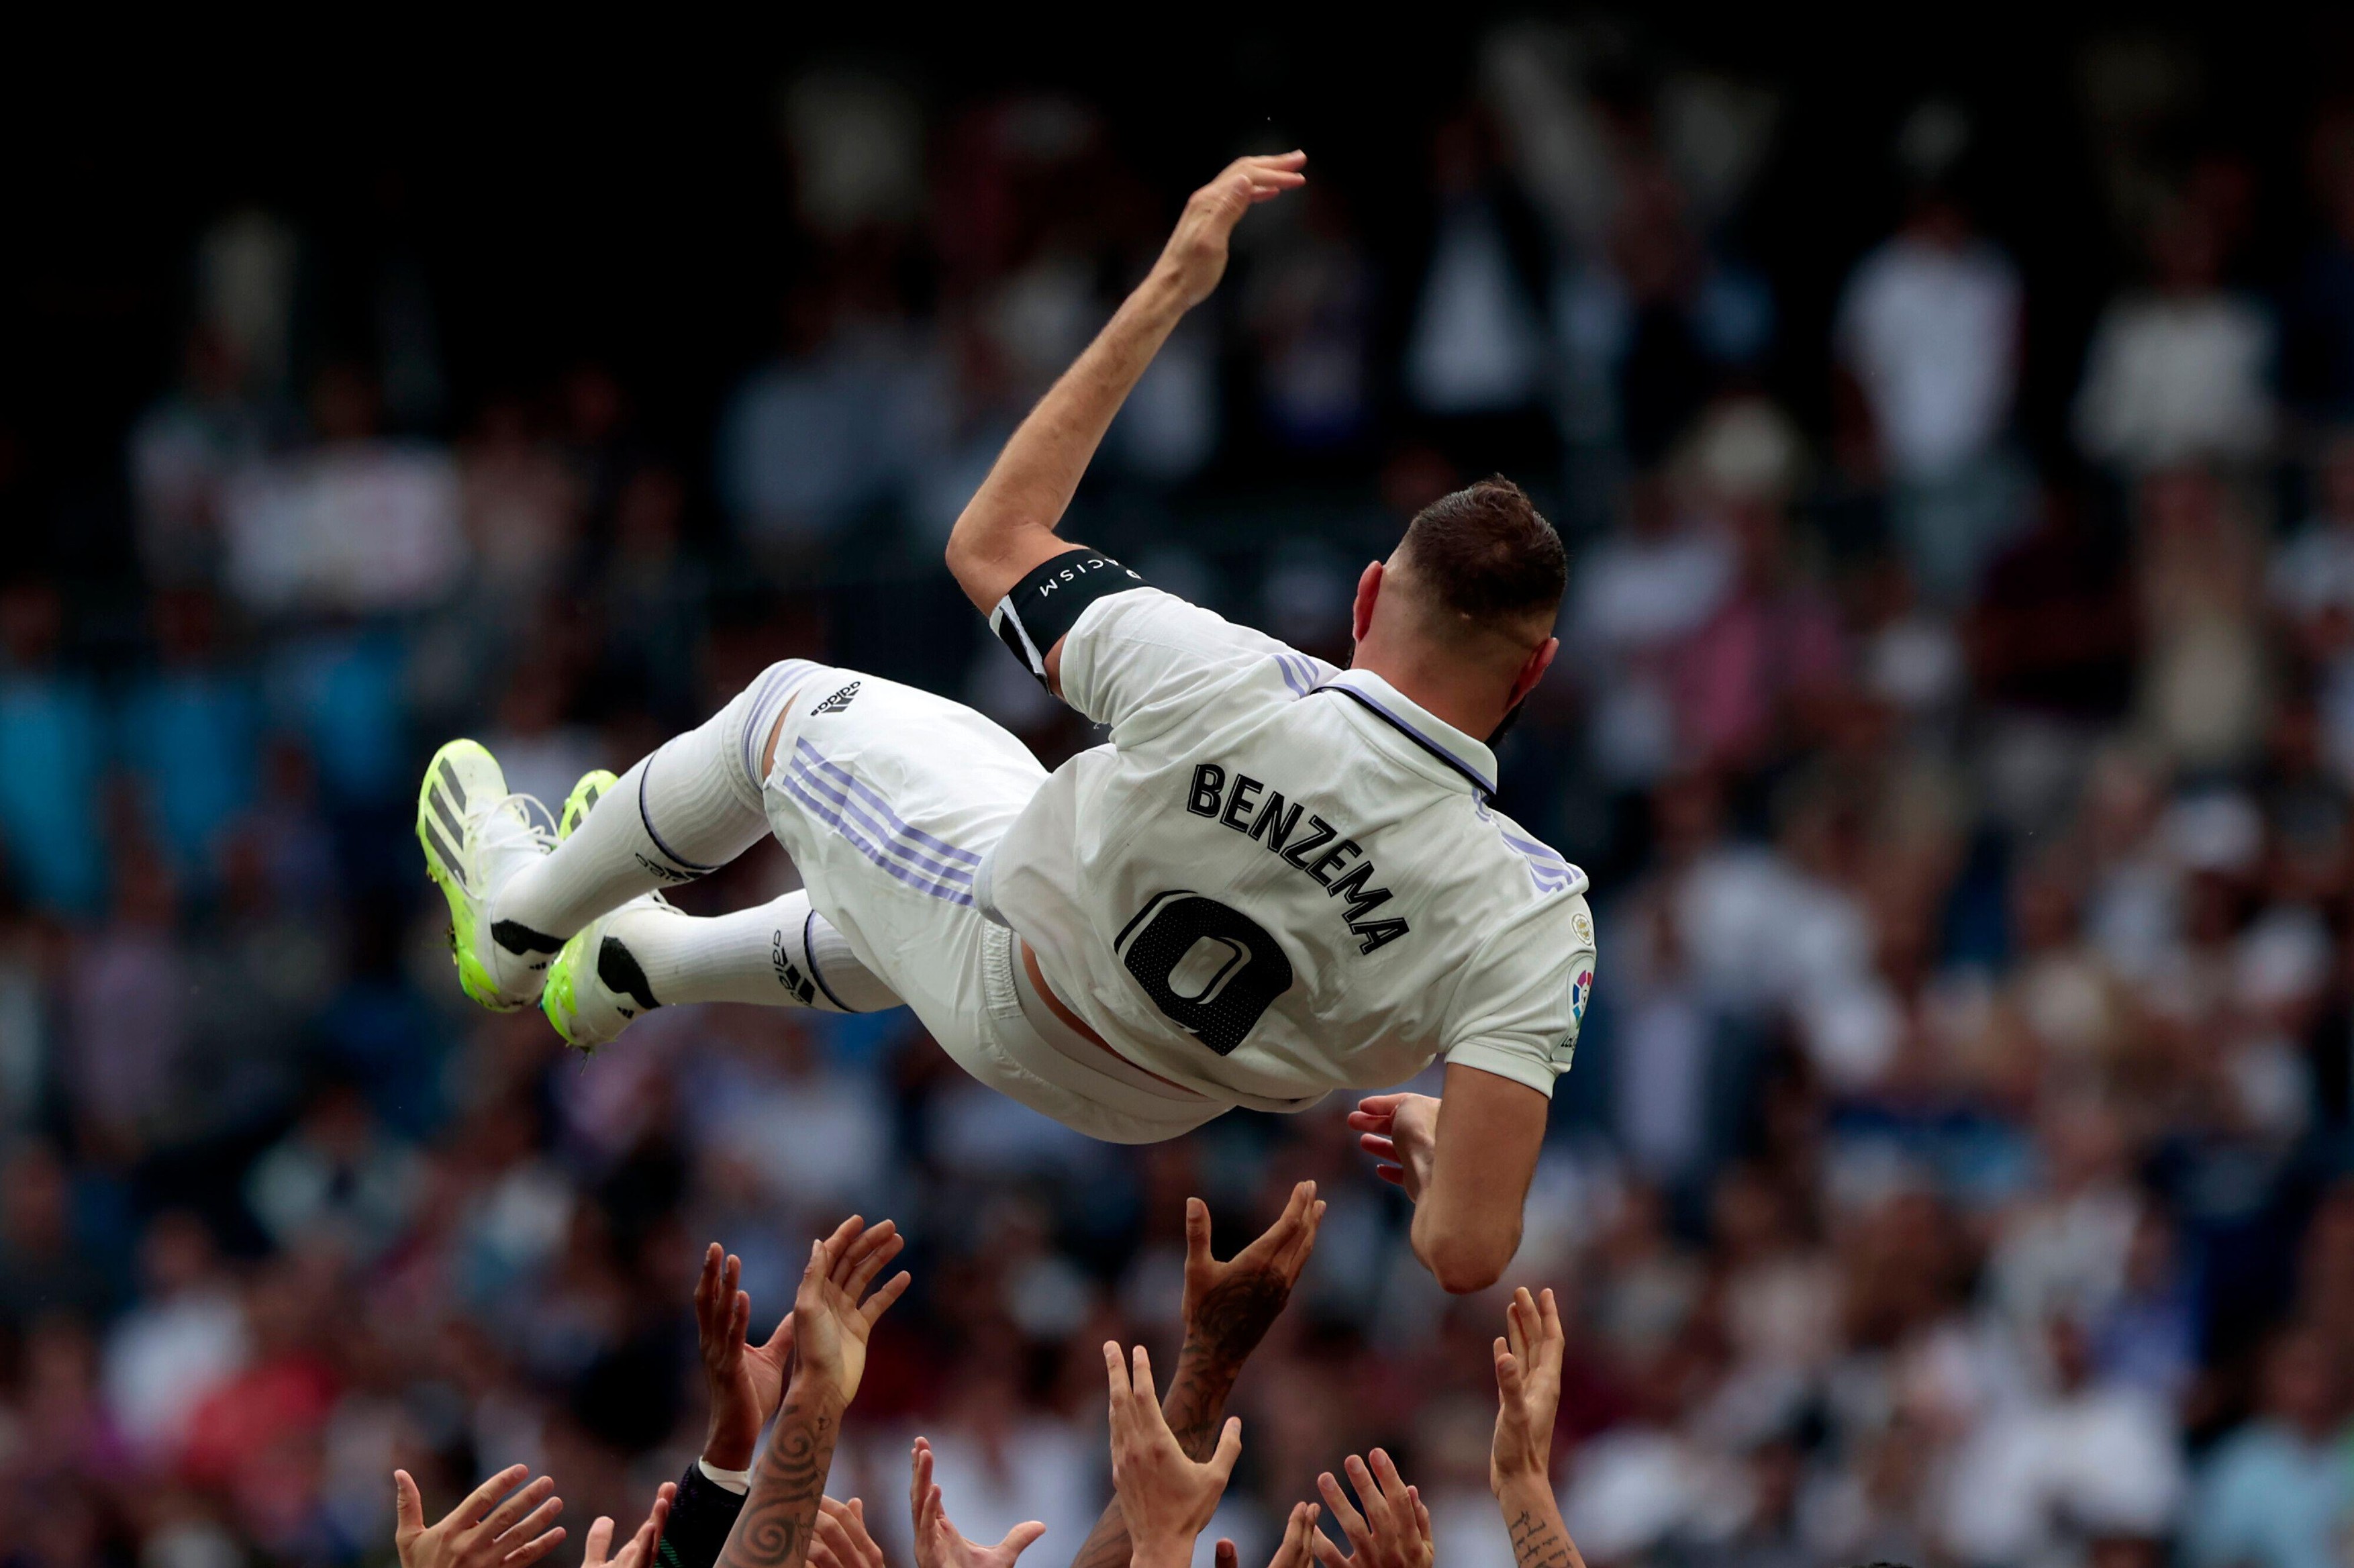 Benzema e nostalgic și își critică actualul club: ”Aici nu e ca la Madrid!”